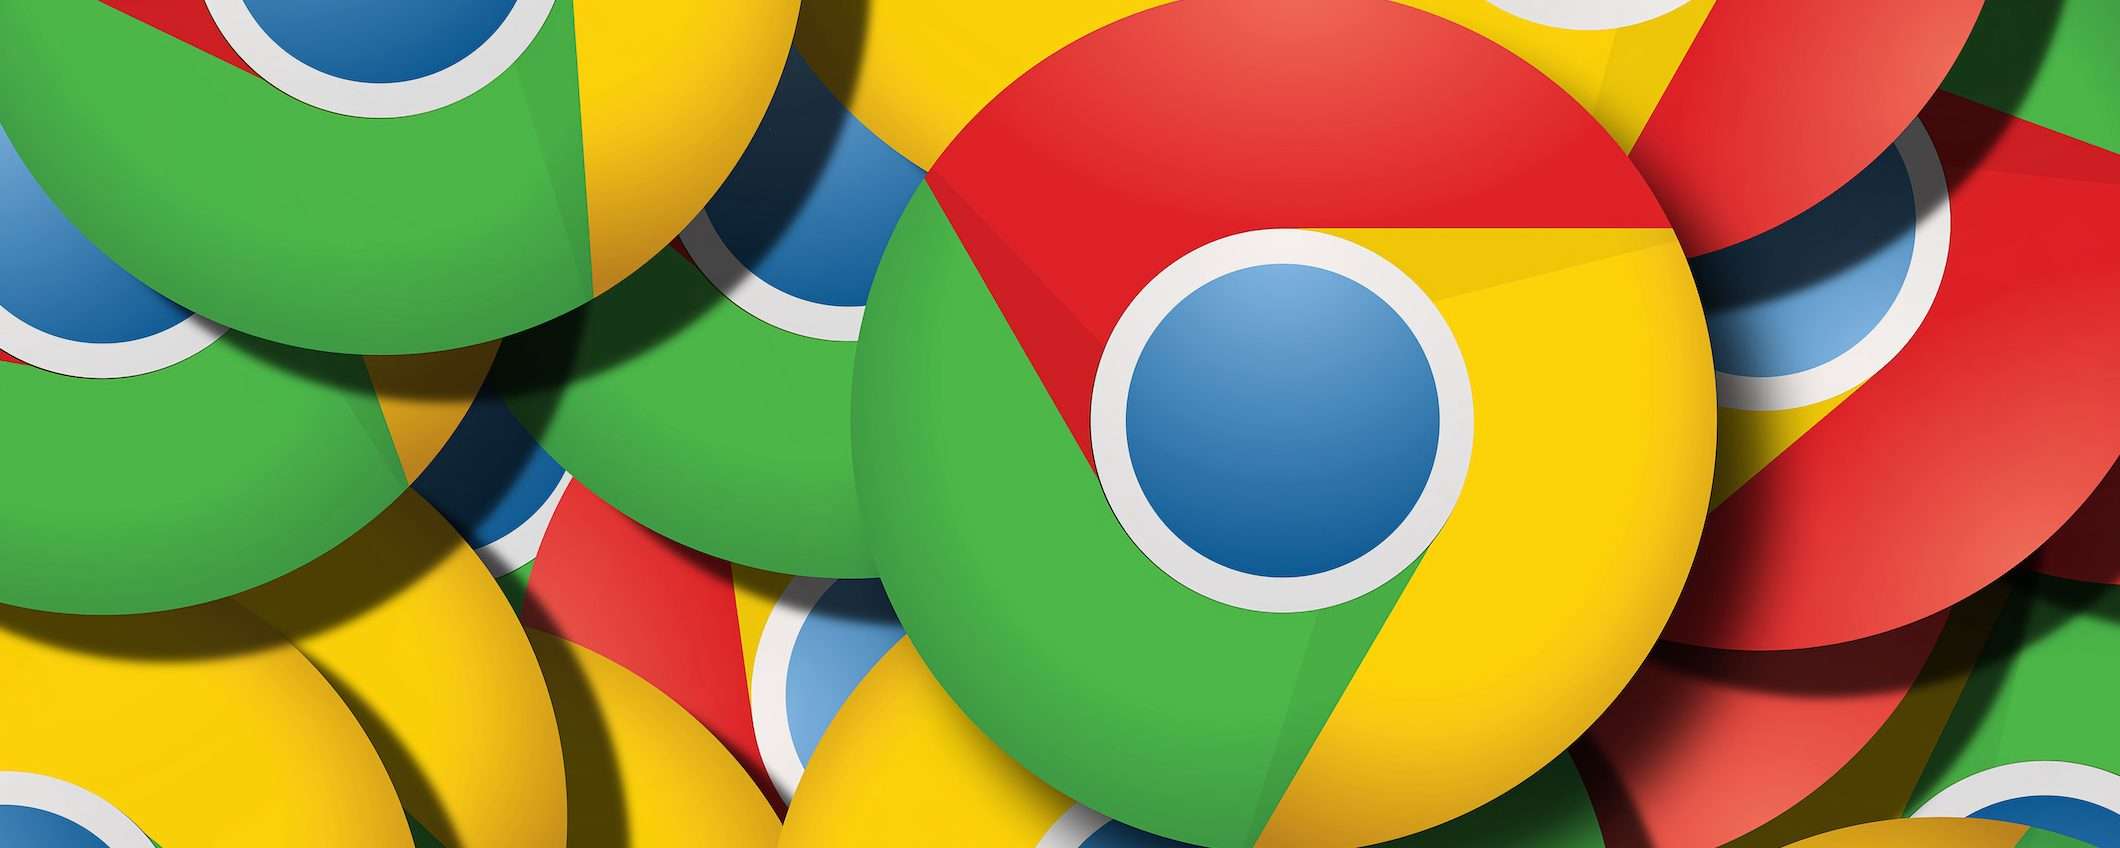 Chrome: attacchi 0-Day sempre più in aumento